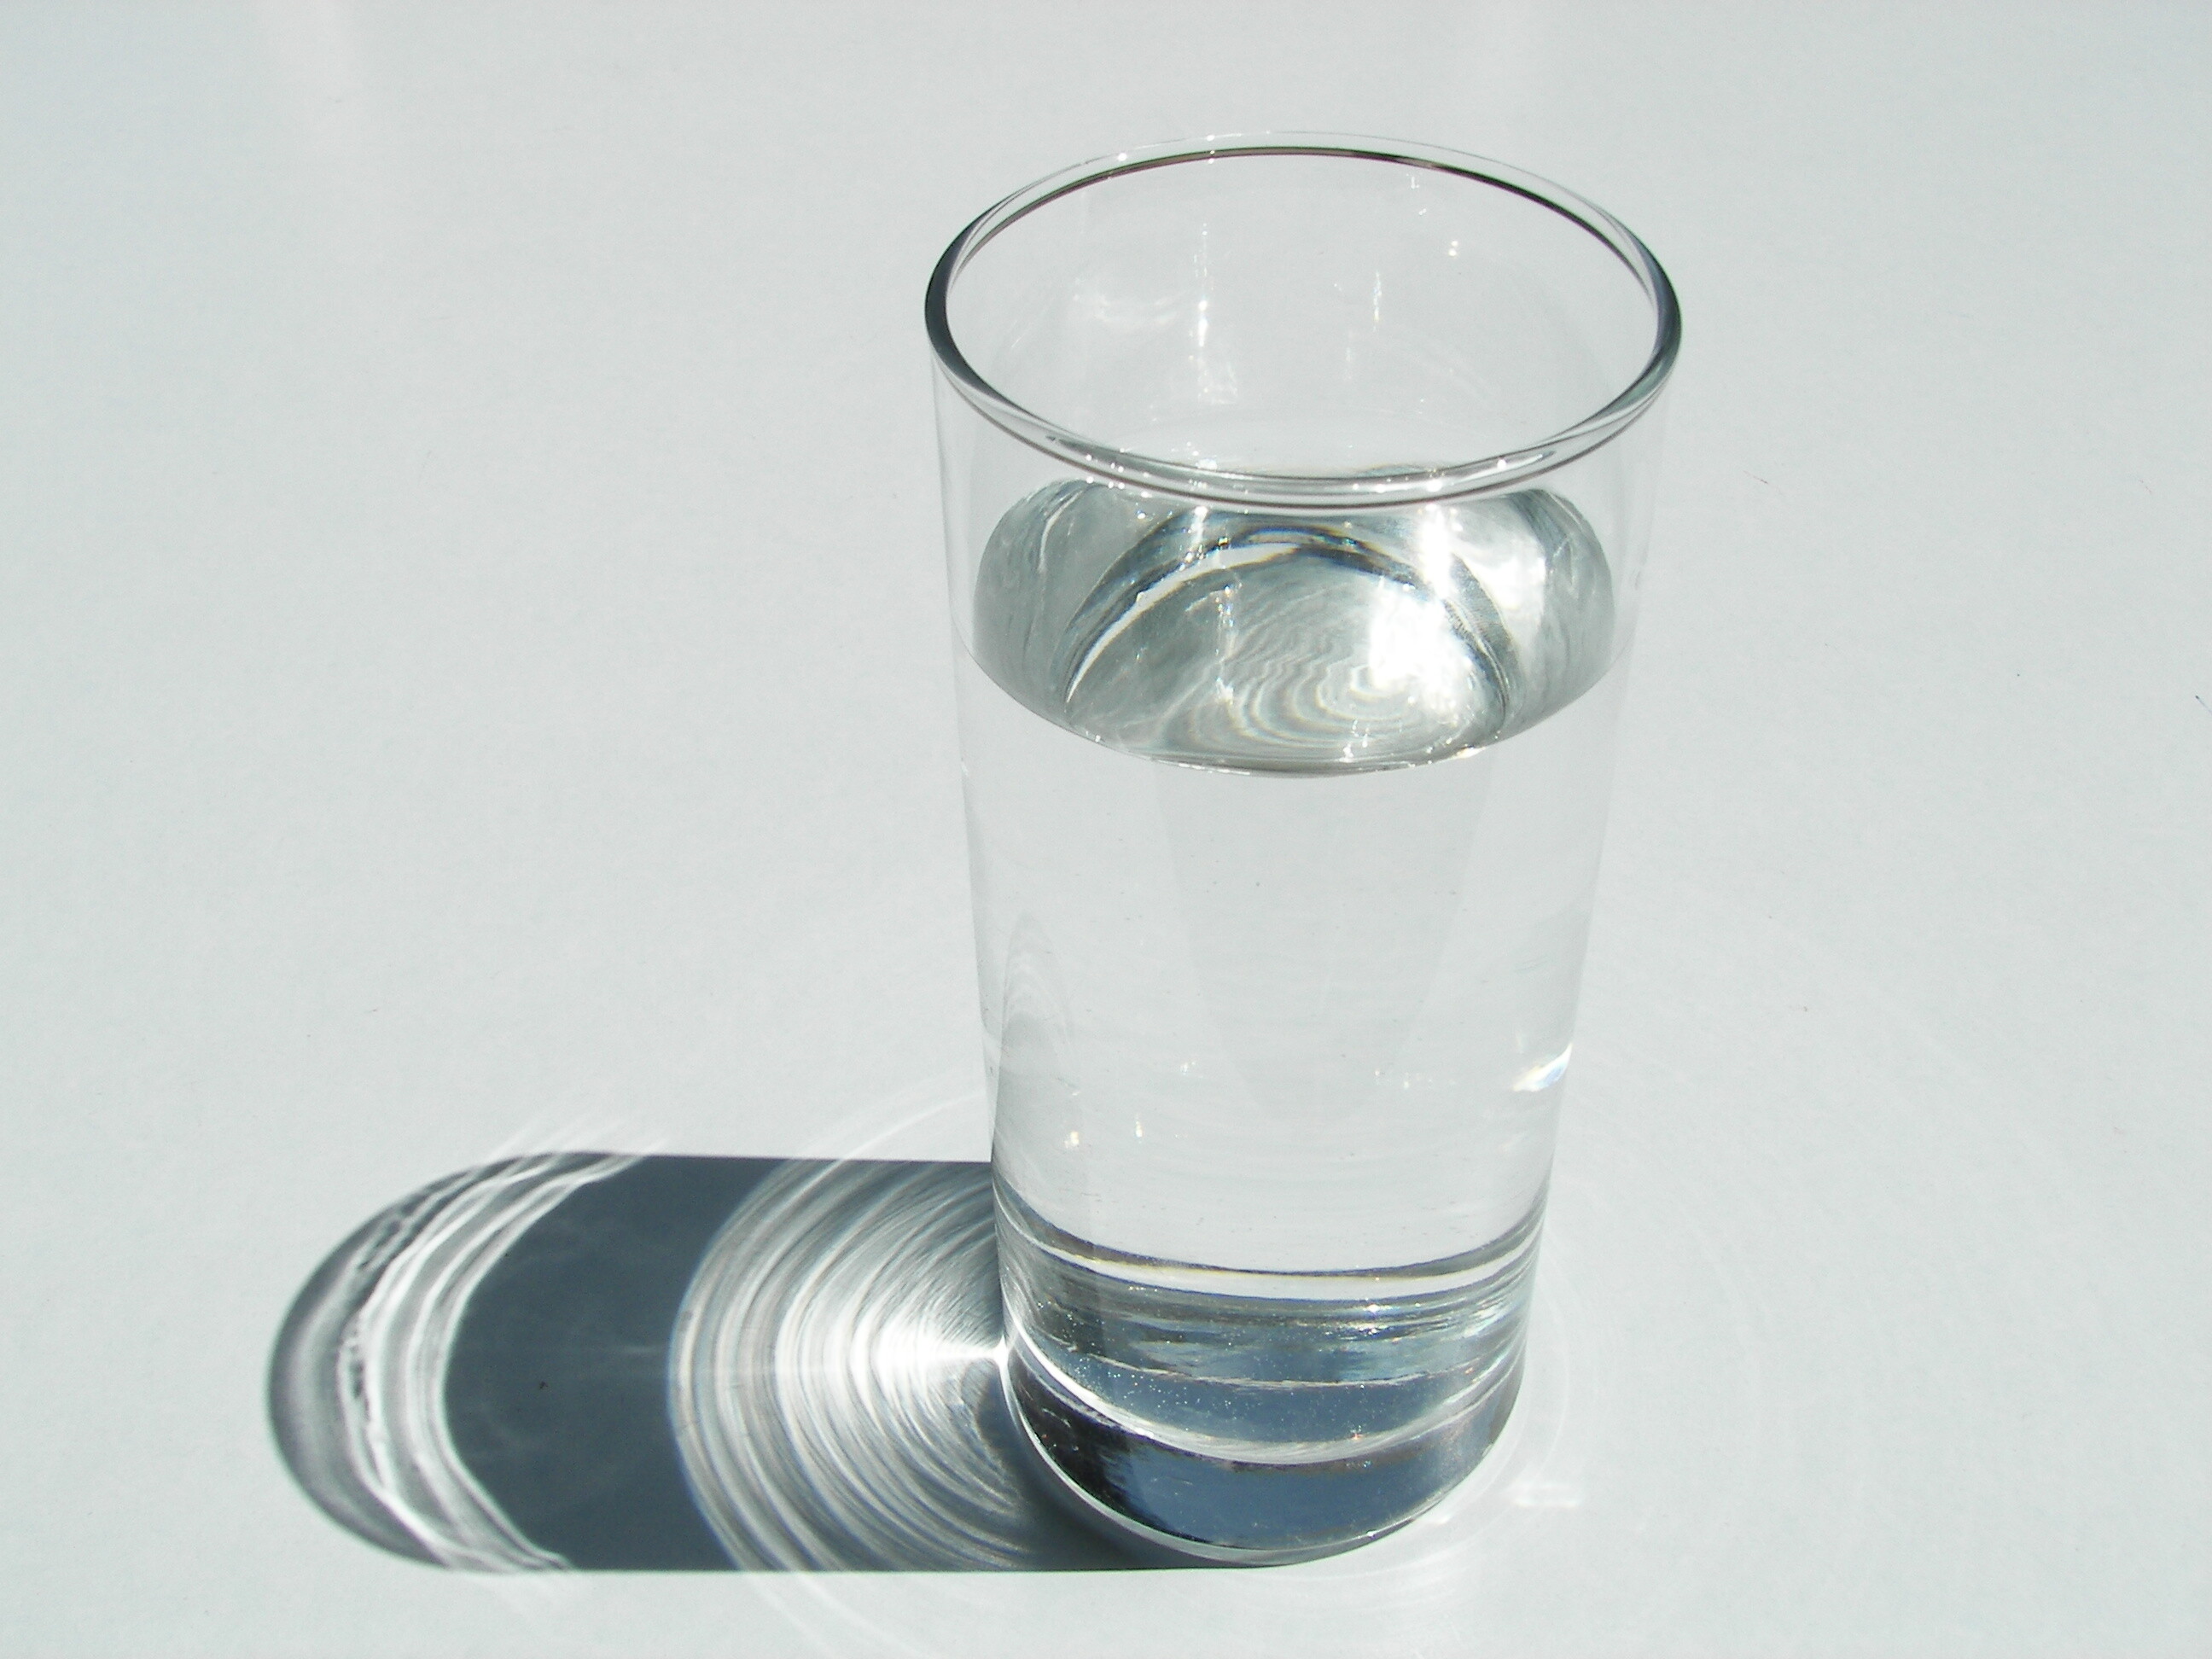 Вода в сосуде 120. Стакан воды. Стаканы для воды стеклянные. Стакан с жидкостью. Стакан воды на столе.